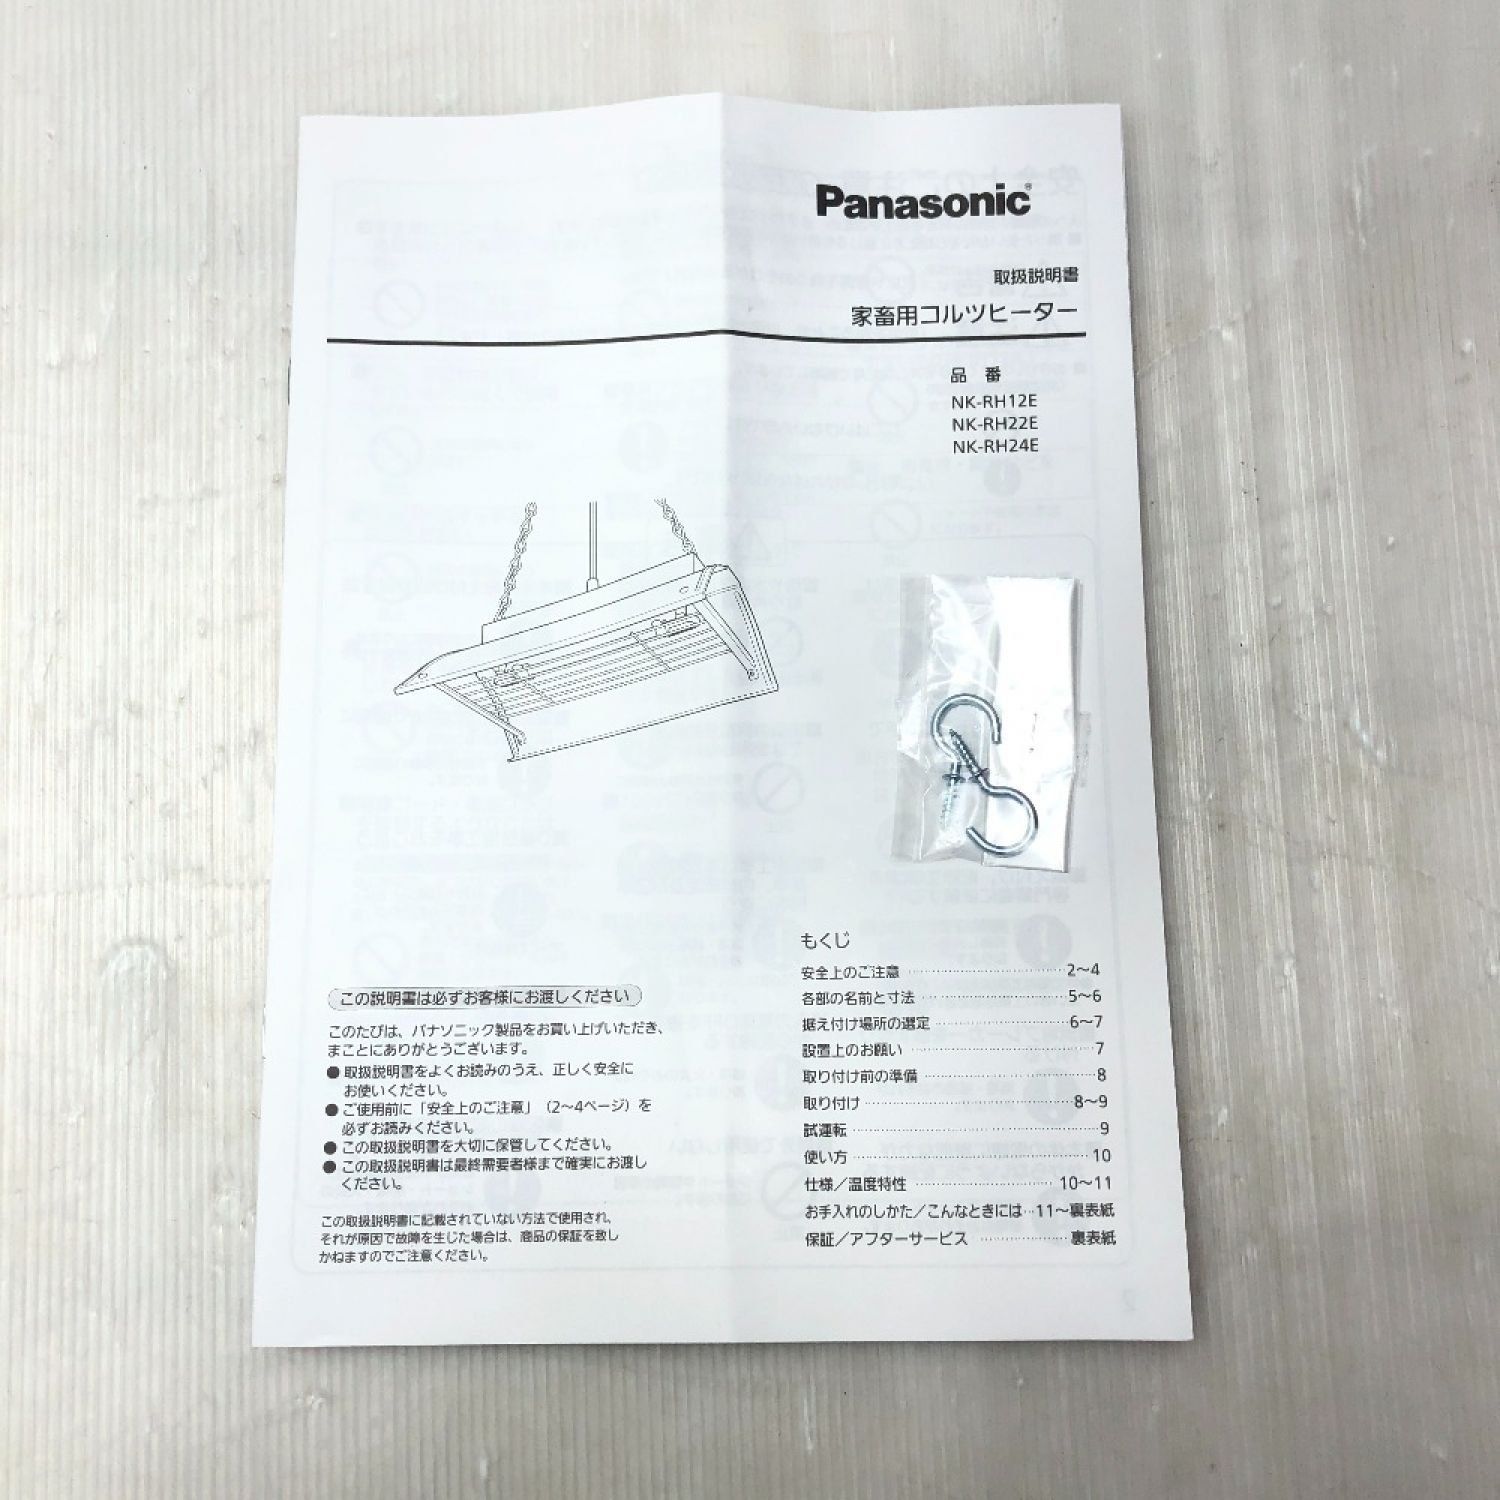 中古】 Panasonic パナソニック コルツヒーター 付属品完備 200v NK